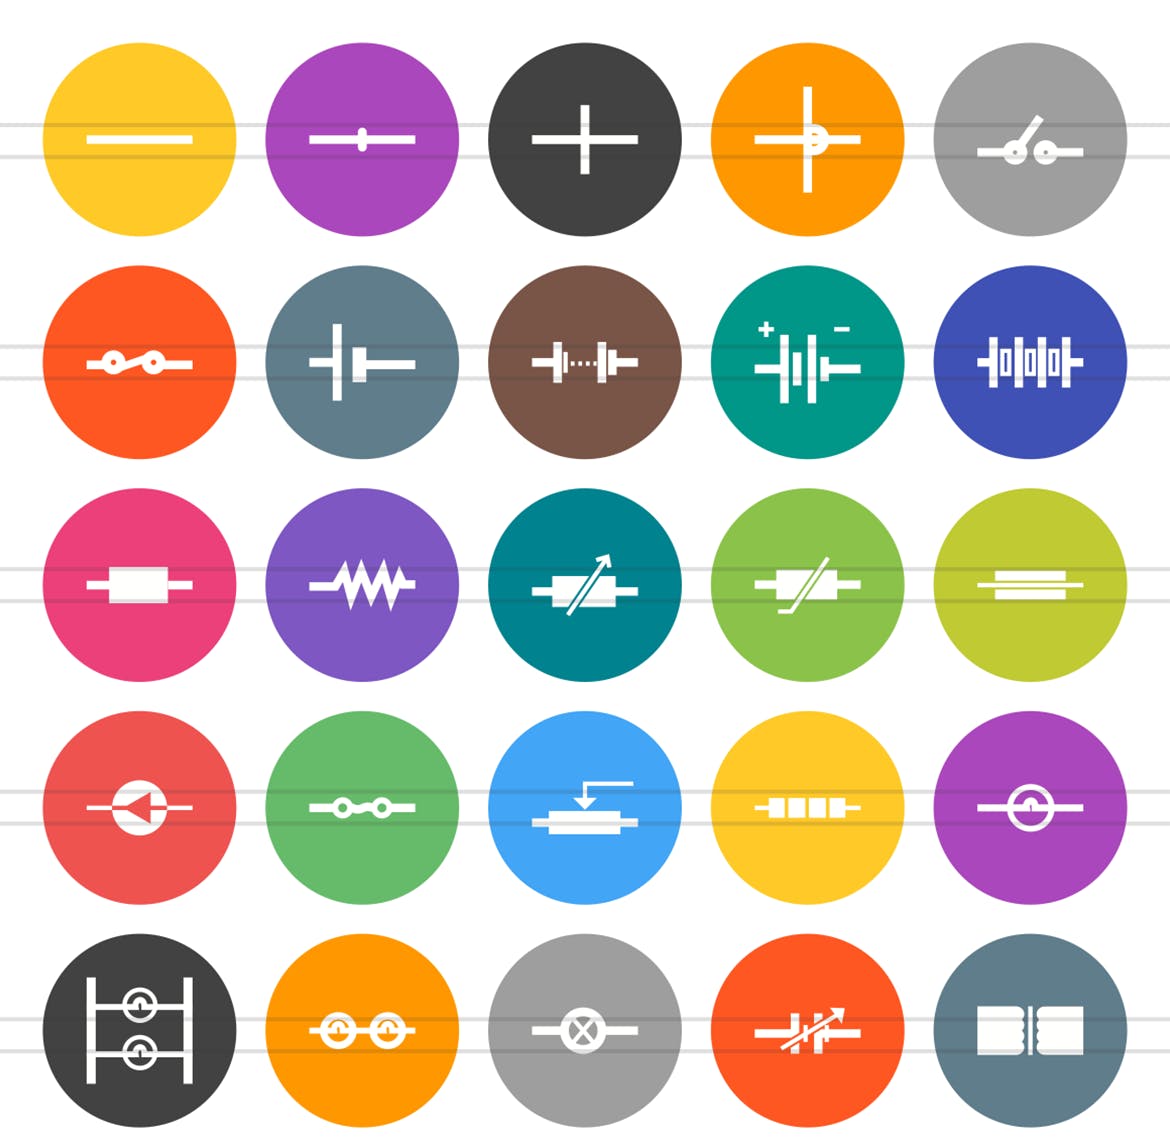 50枚电路线路板主题扁平风圆形素材天下精选图标 50 Electric Circuits Flat Round Icons插图(1)